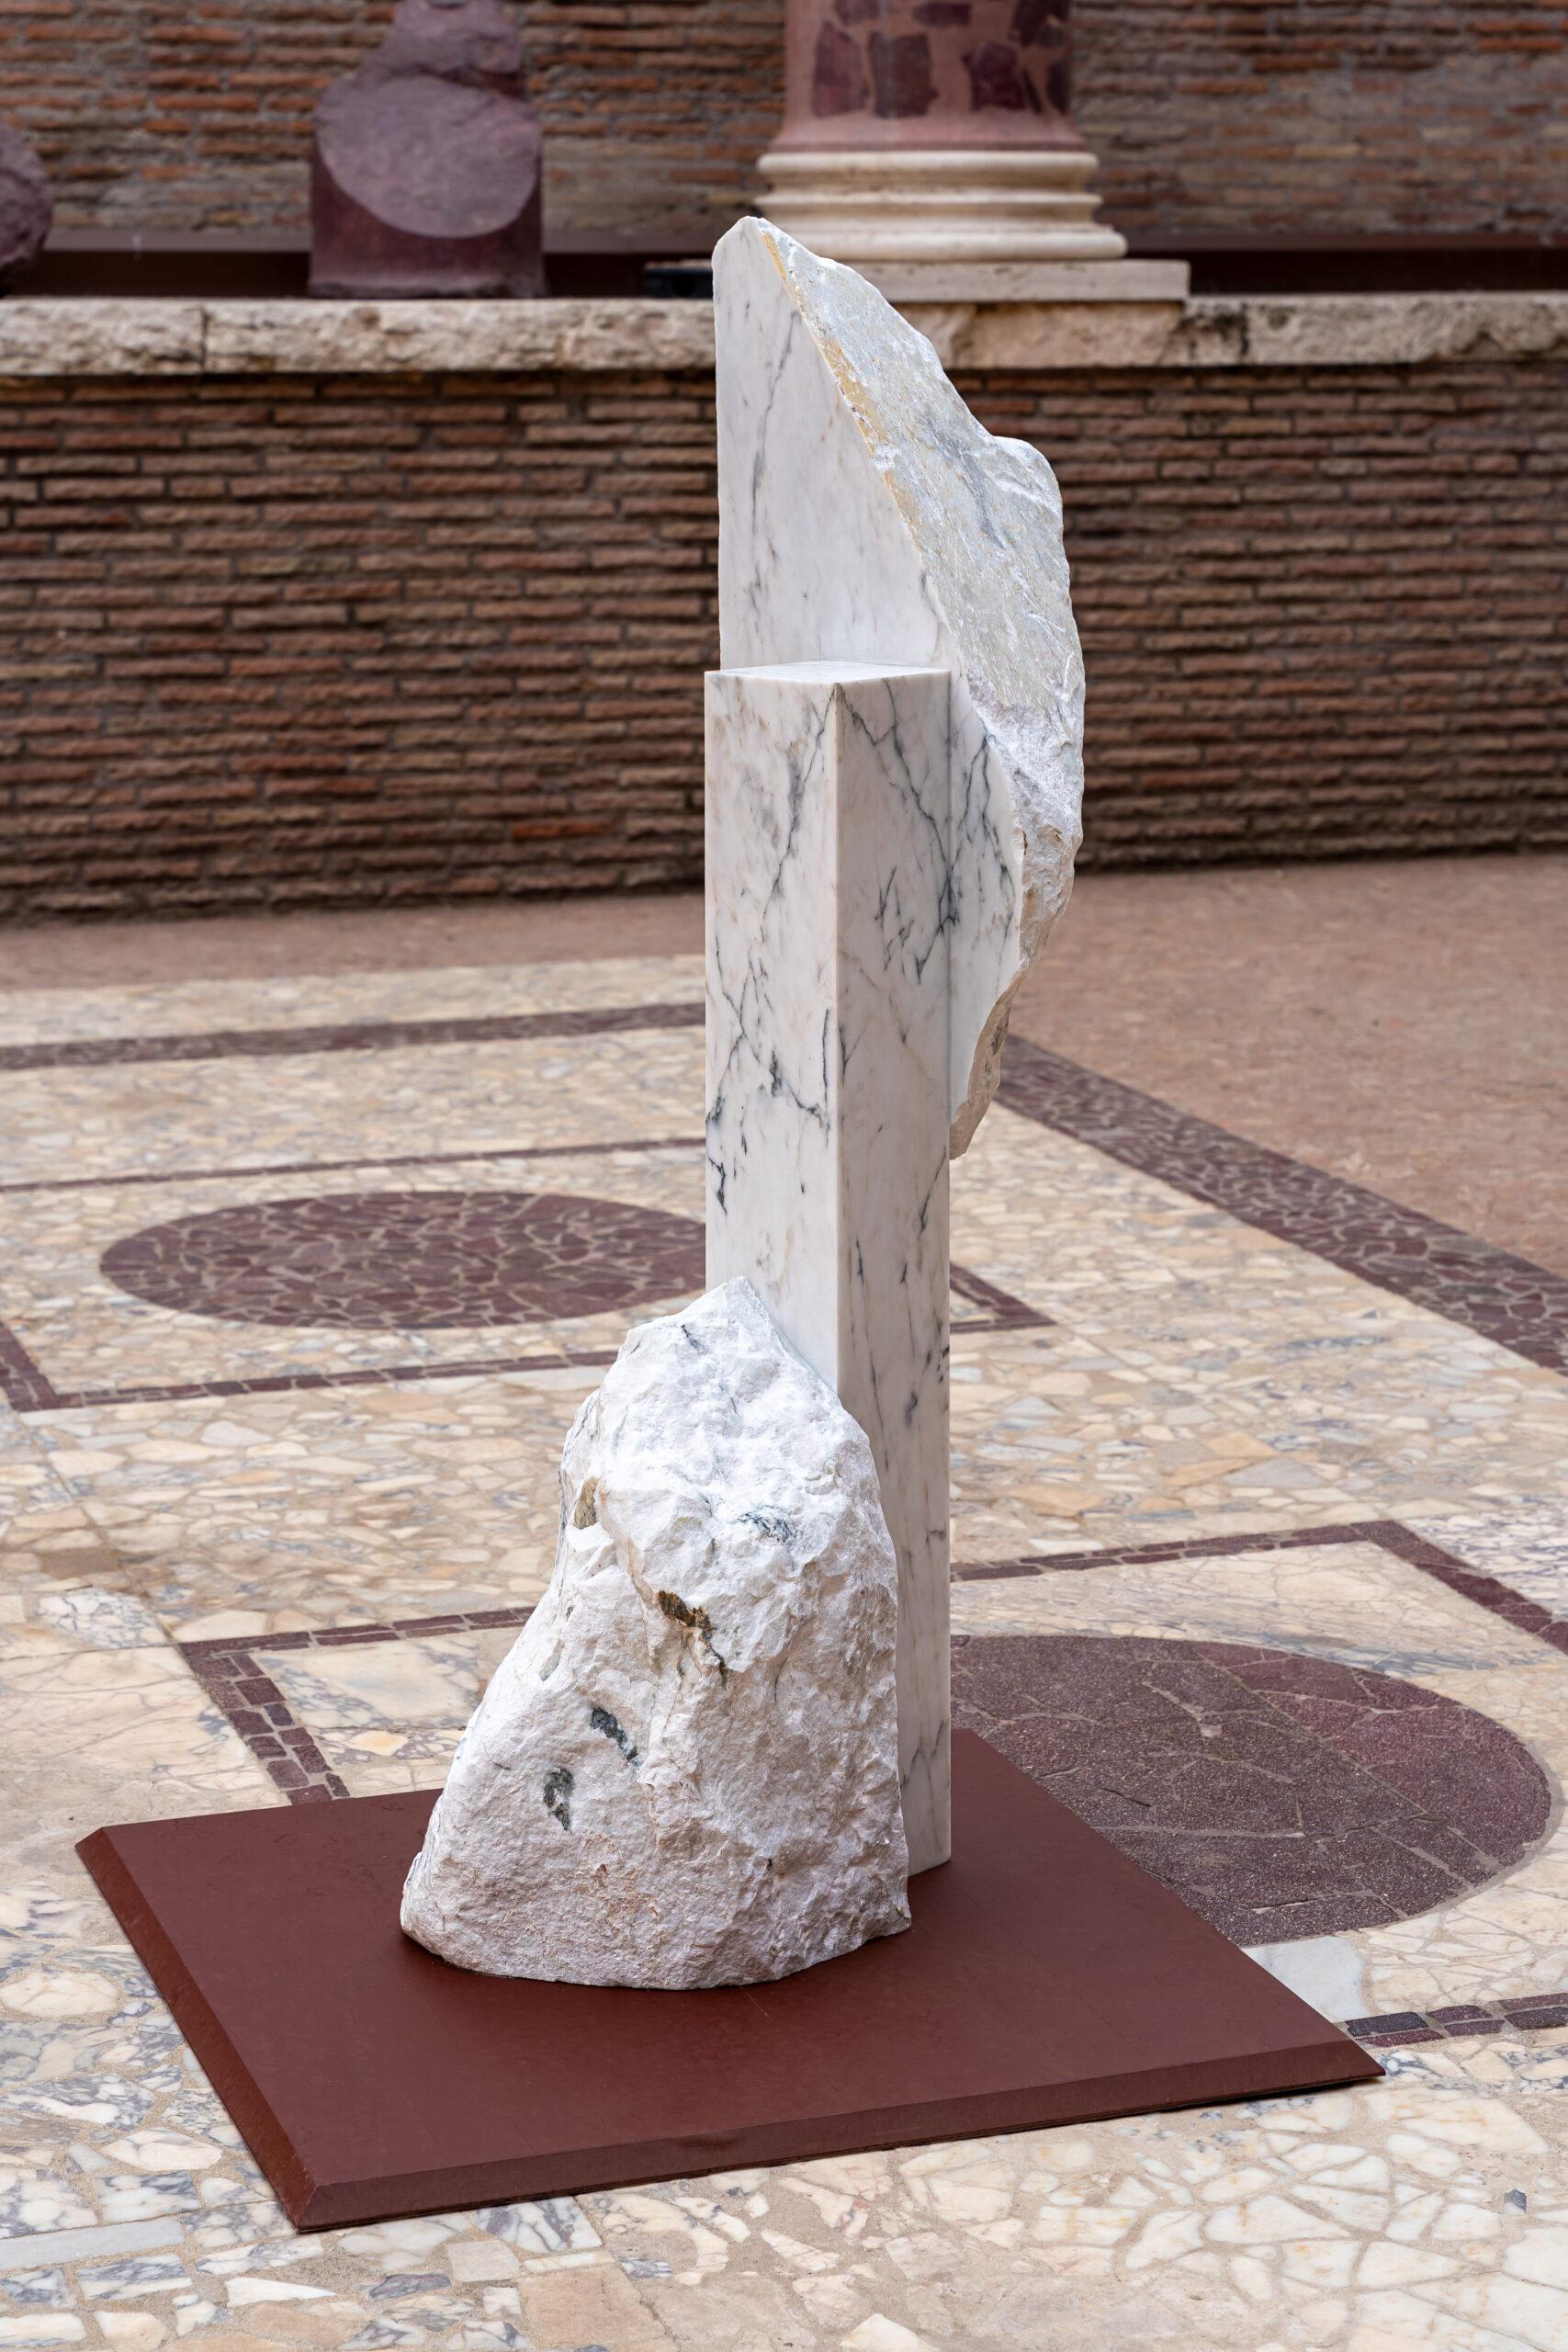 Korè-Paonazzo ist eine einzigartige monumentale Skulptur des zeitgenössischen Künstlers Mattia Bosco. Die Skulptur ist aus Paonazzo-Marmor gefertigt und hat die Maße 165 × 41 × 85 cm (65 × 16,1 × 33,5 in). 

Diese Arbeit ist Teil einer Sammlung von